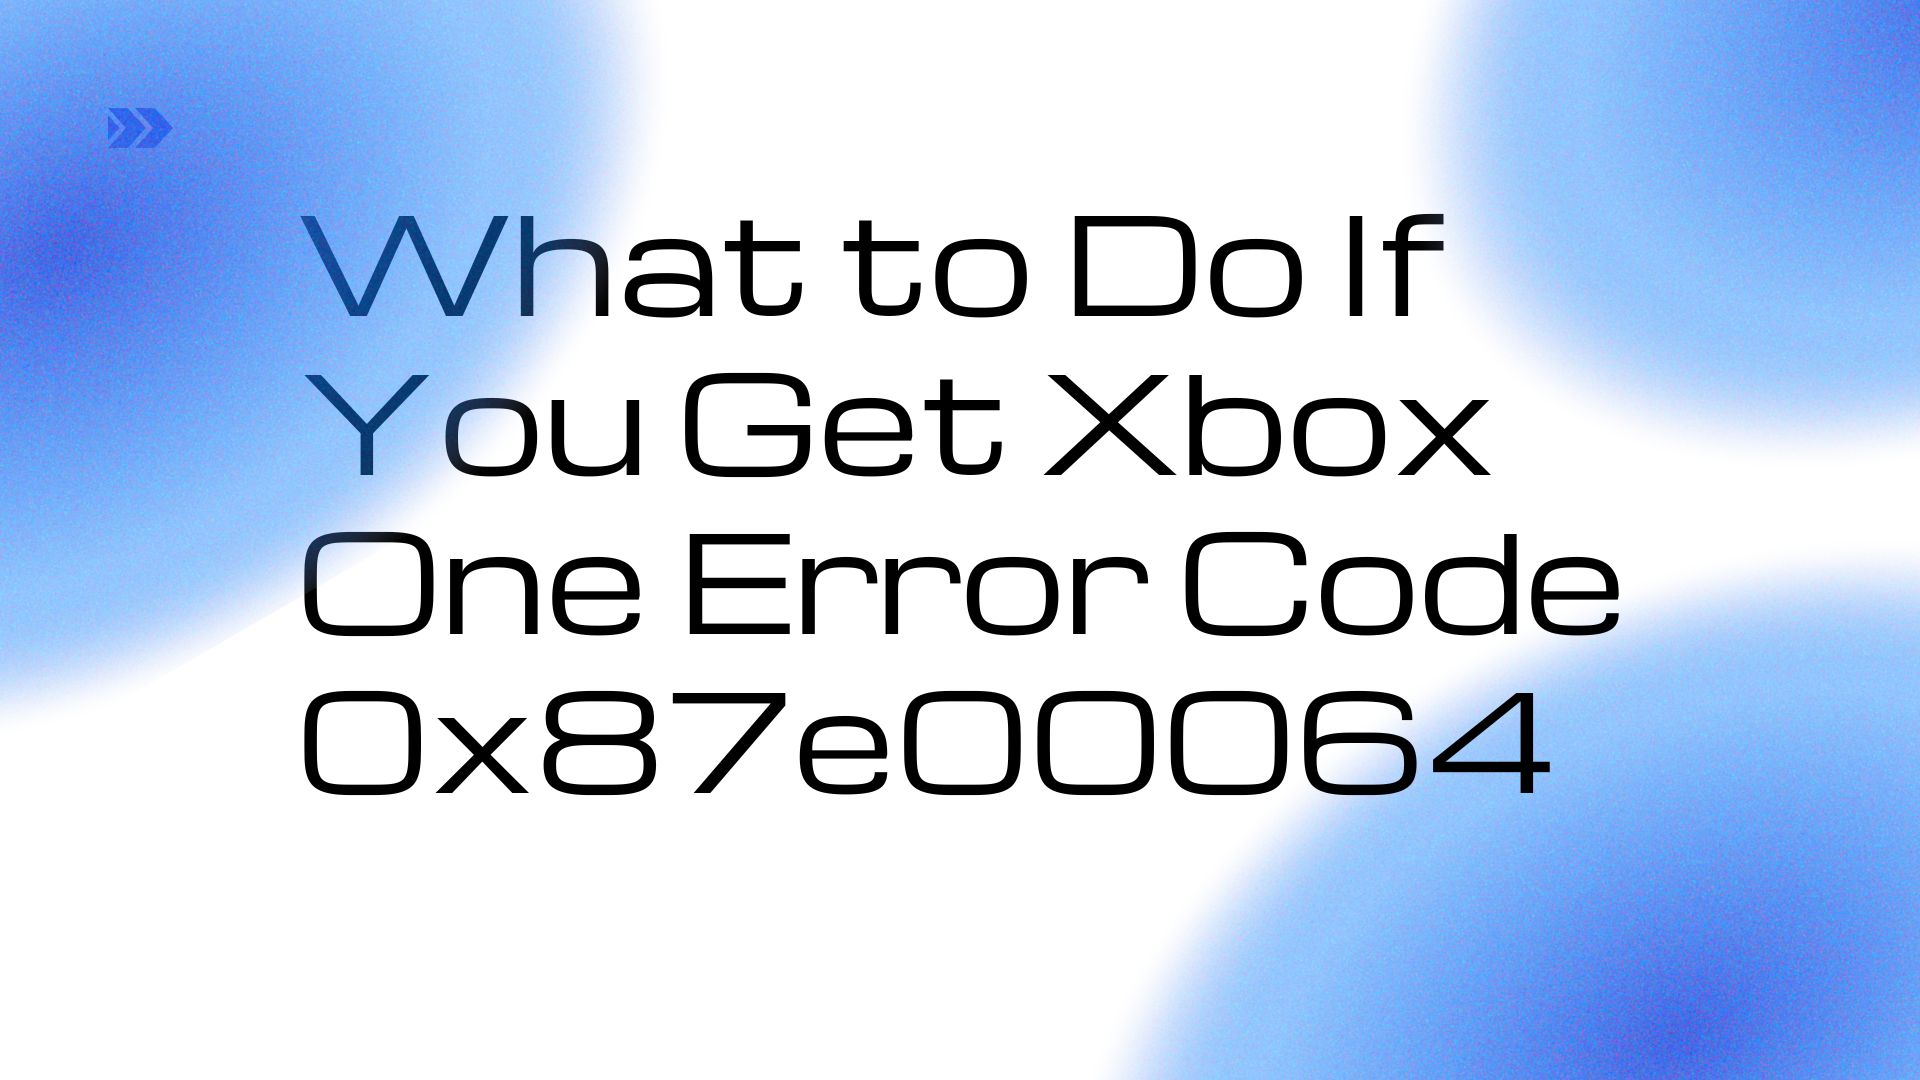 xbox one error code 0x87e00064